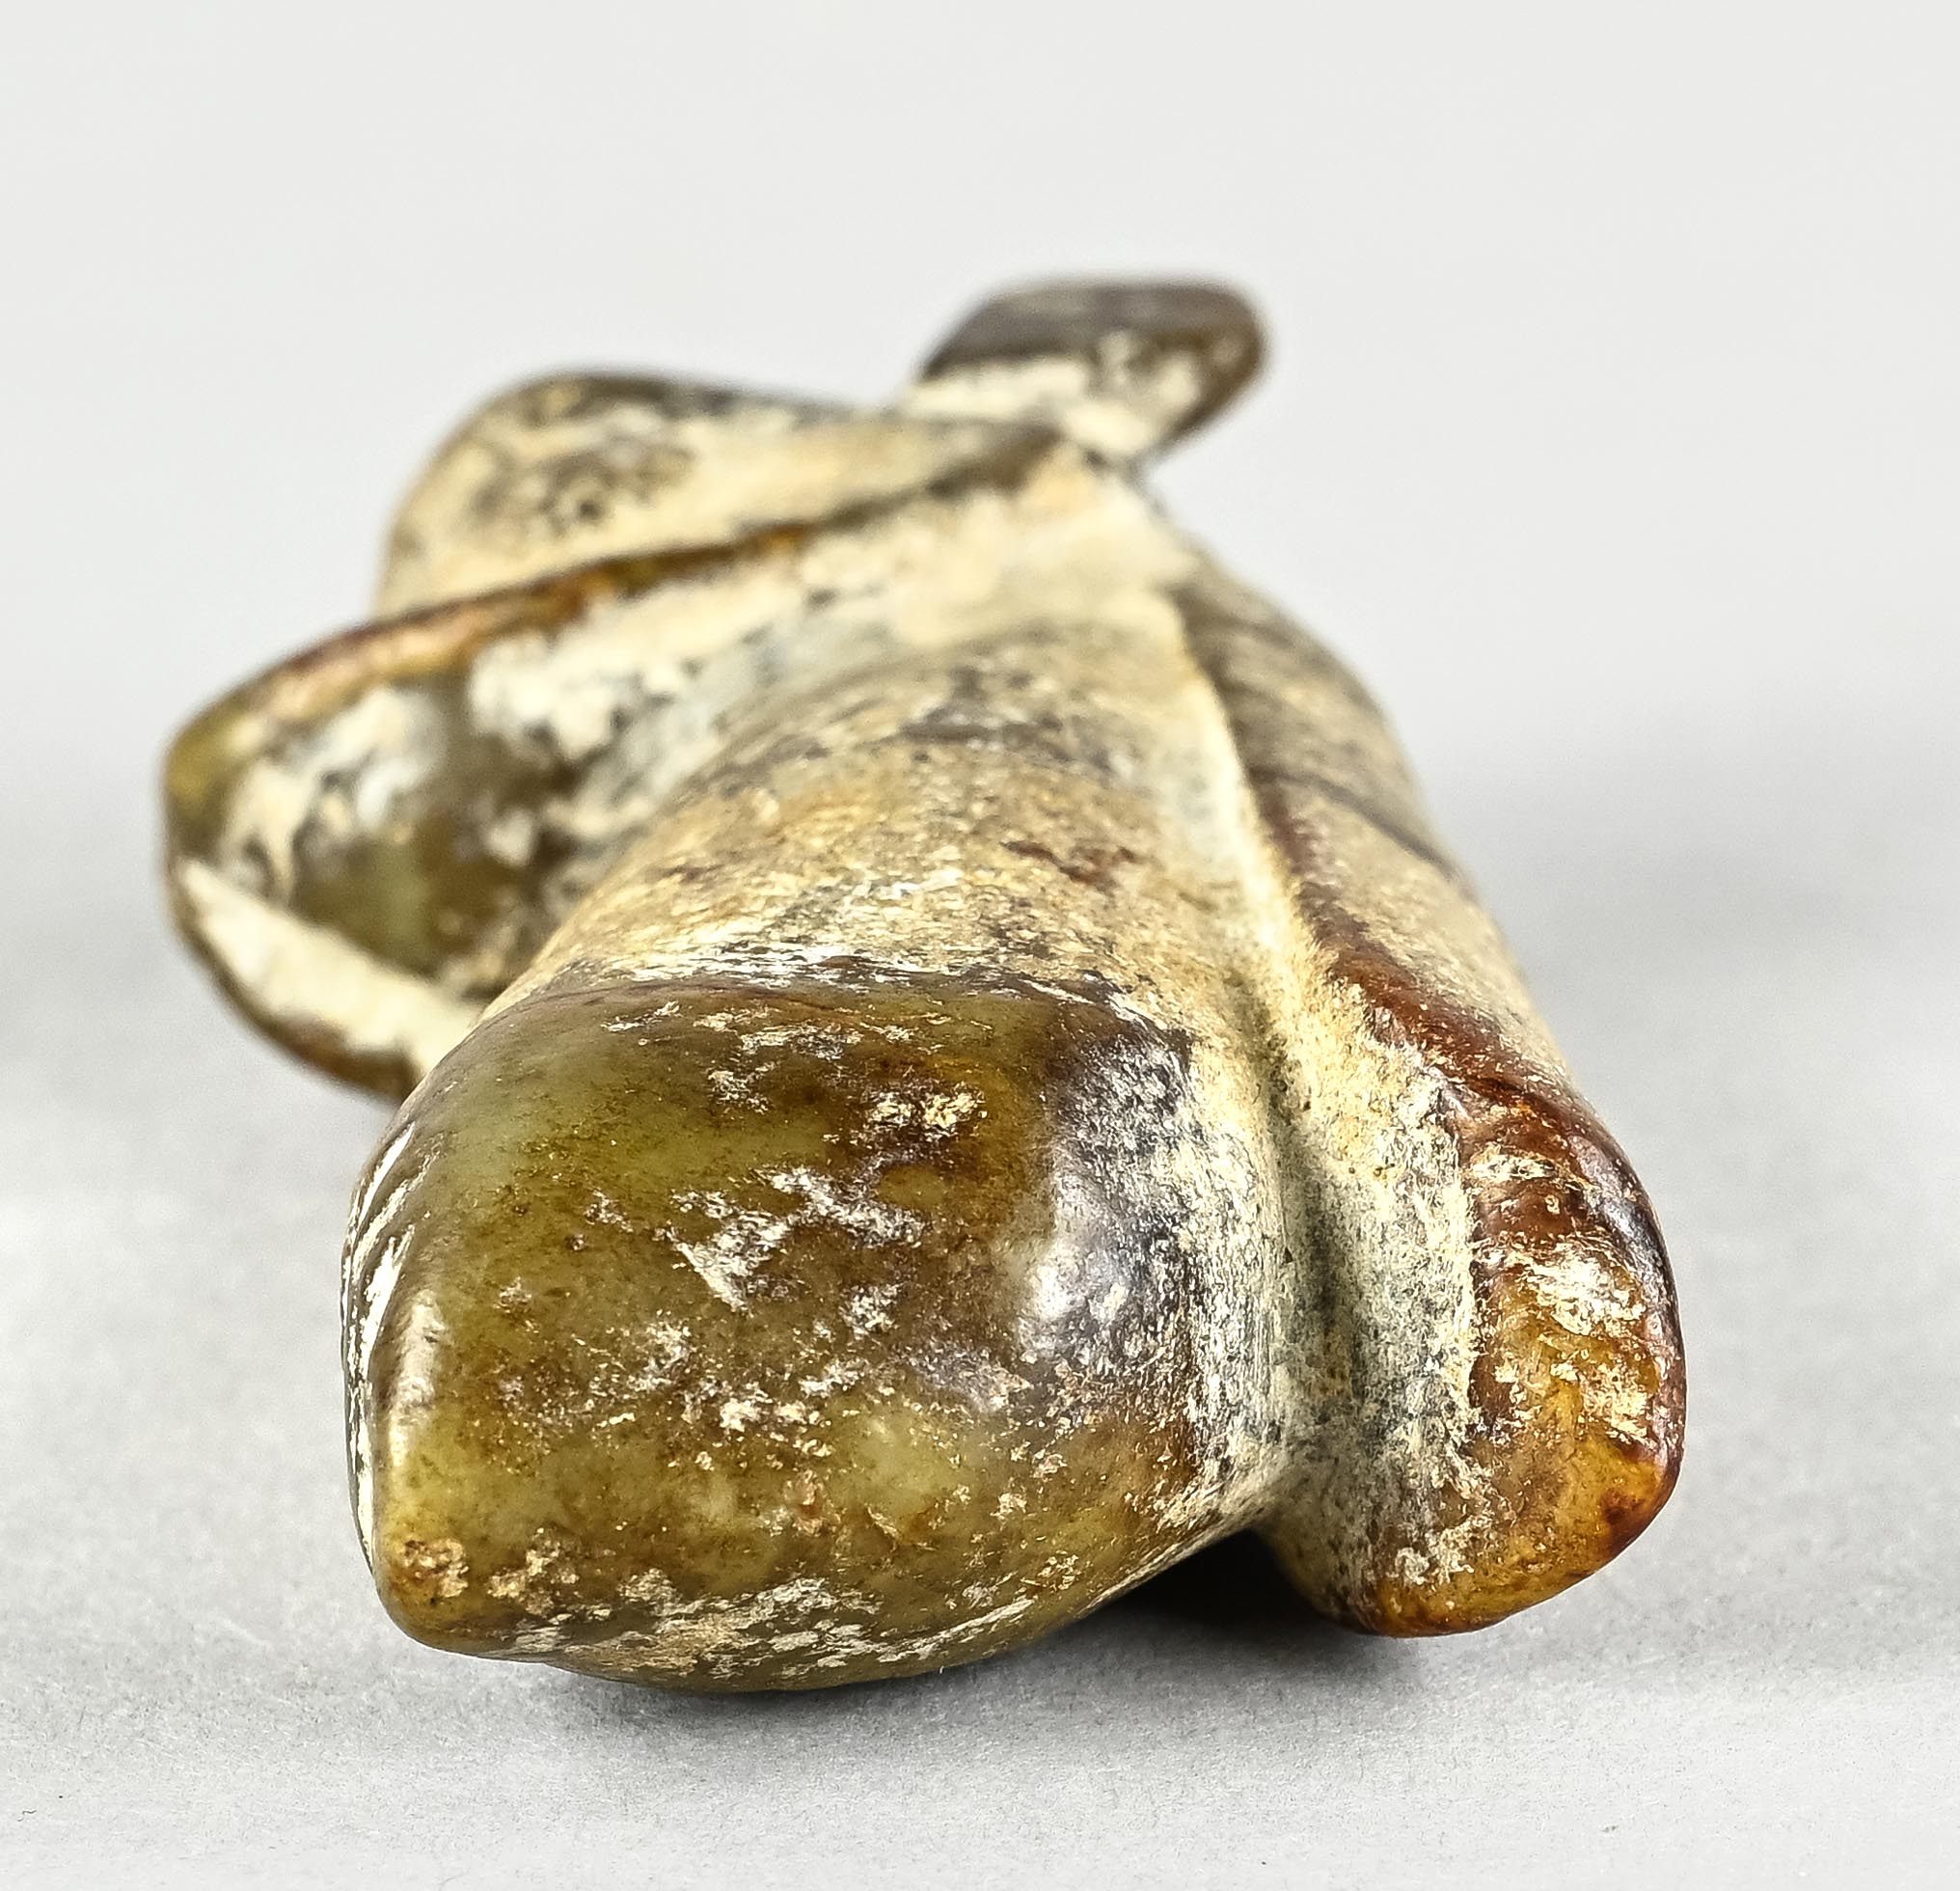 Hongshang Amulett, Fantasiefigur, Tier ähnlich, Jade mit Patina, China, Höhe 9 cm - Bild 4 aus 4